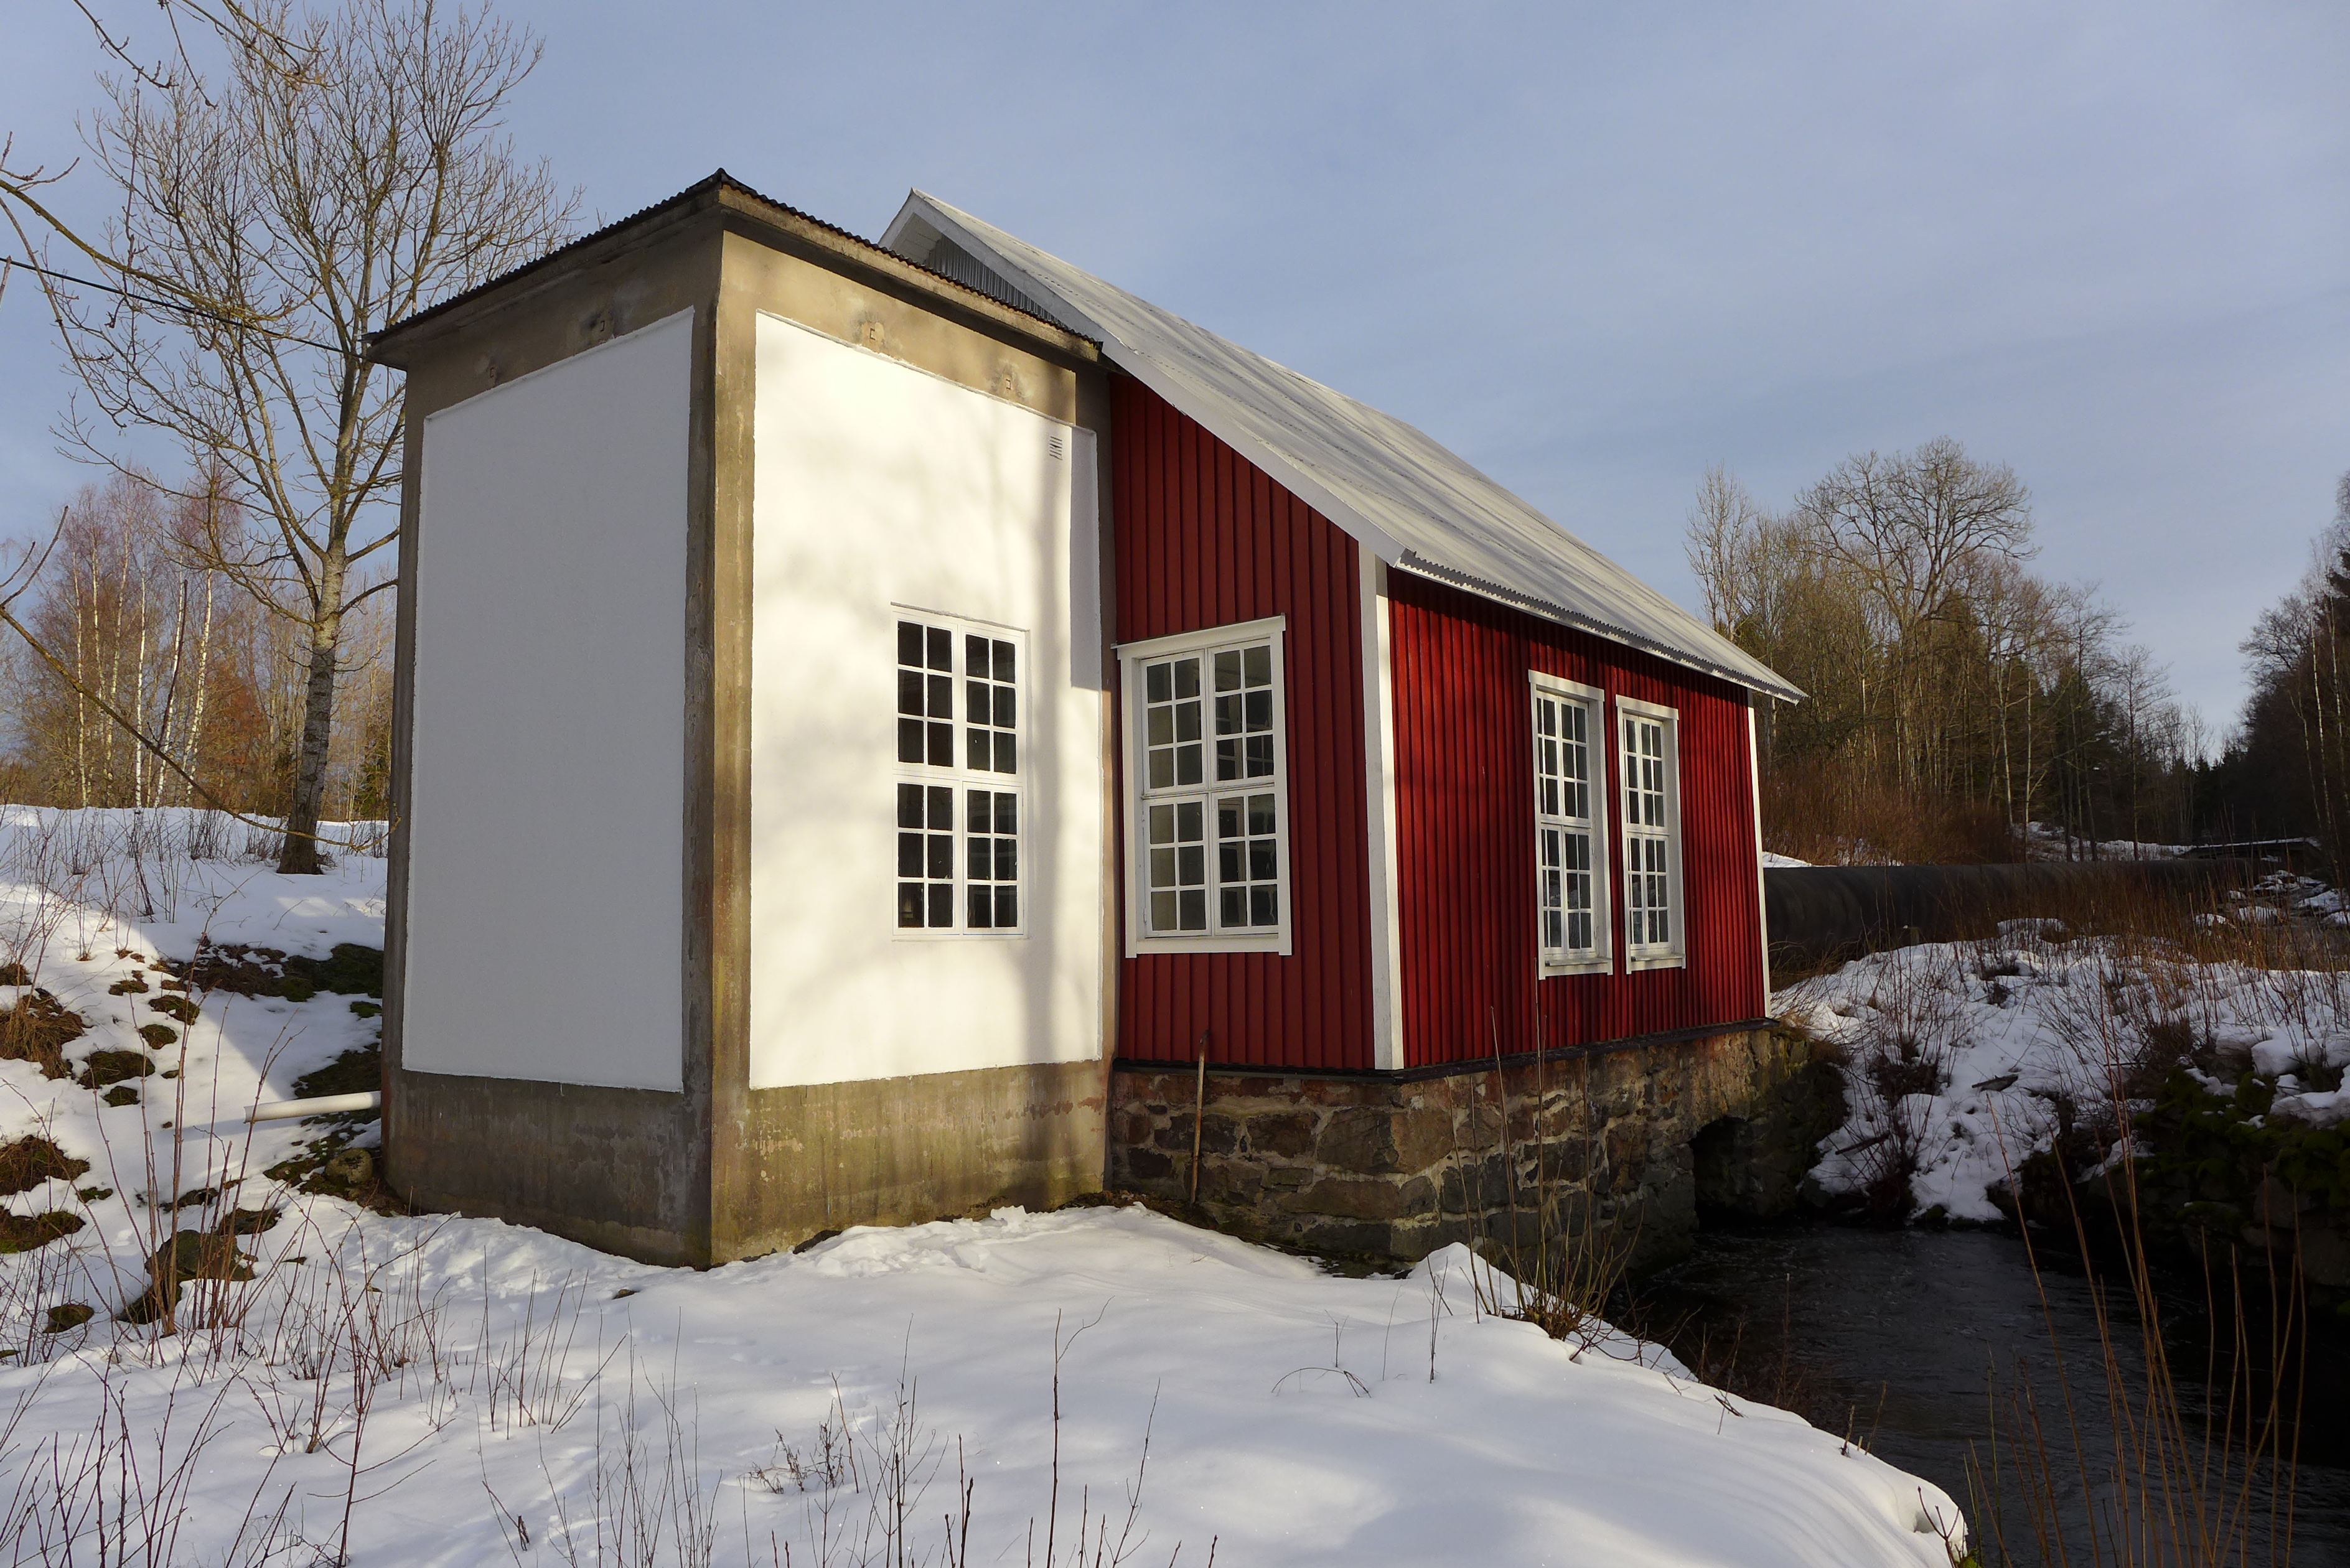 Stampens kraftverk är uppfört vid Storån i Melleruds kommun. Kraftstationen utgörs av två sammanbyggda huskroppar - den i trä inrymmer maskinhallen medan den i betong har fungerat som utledningstorn.
